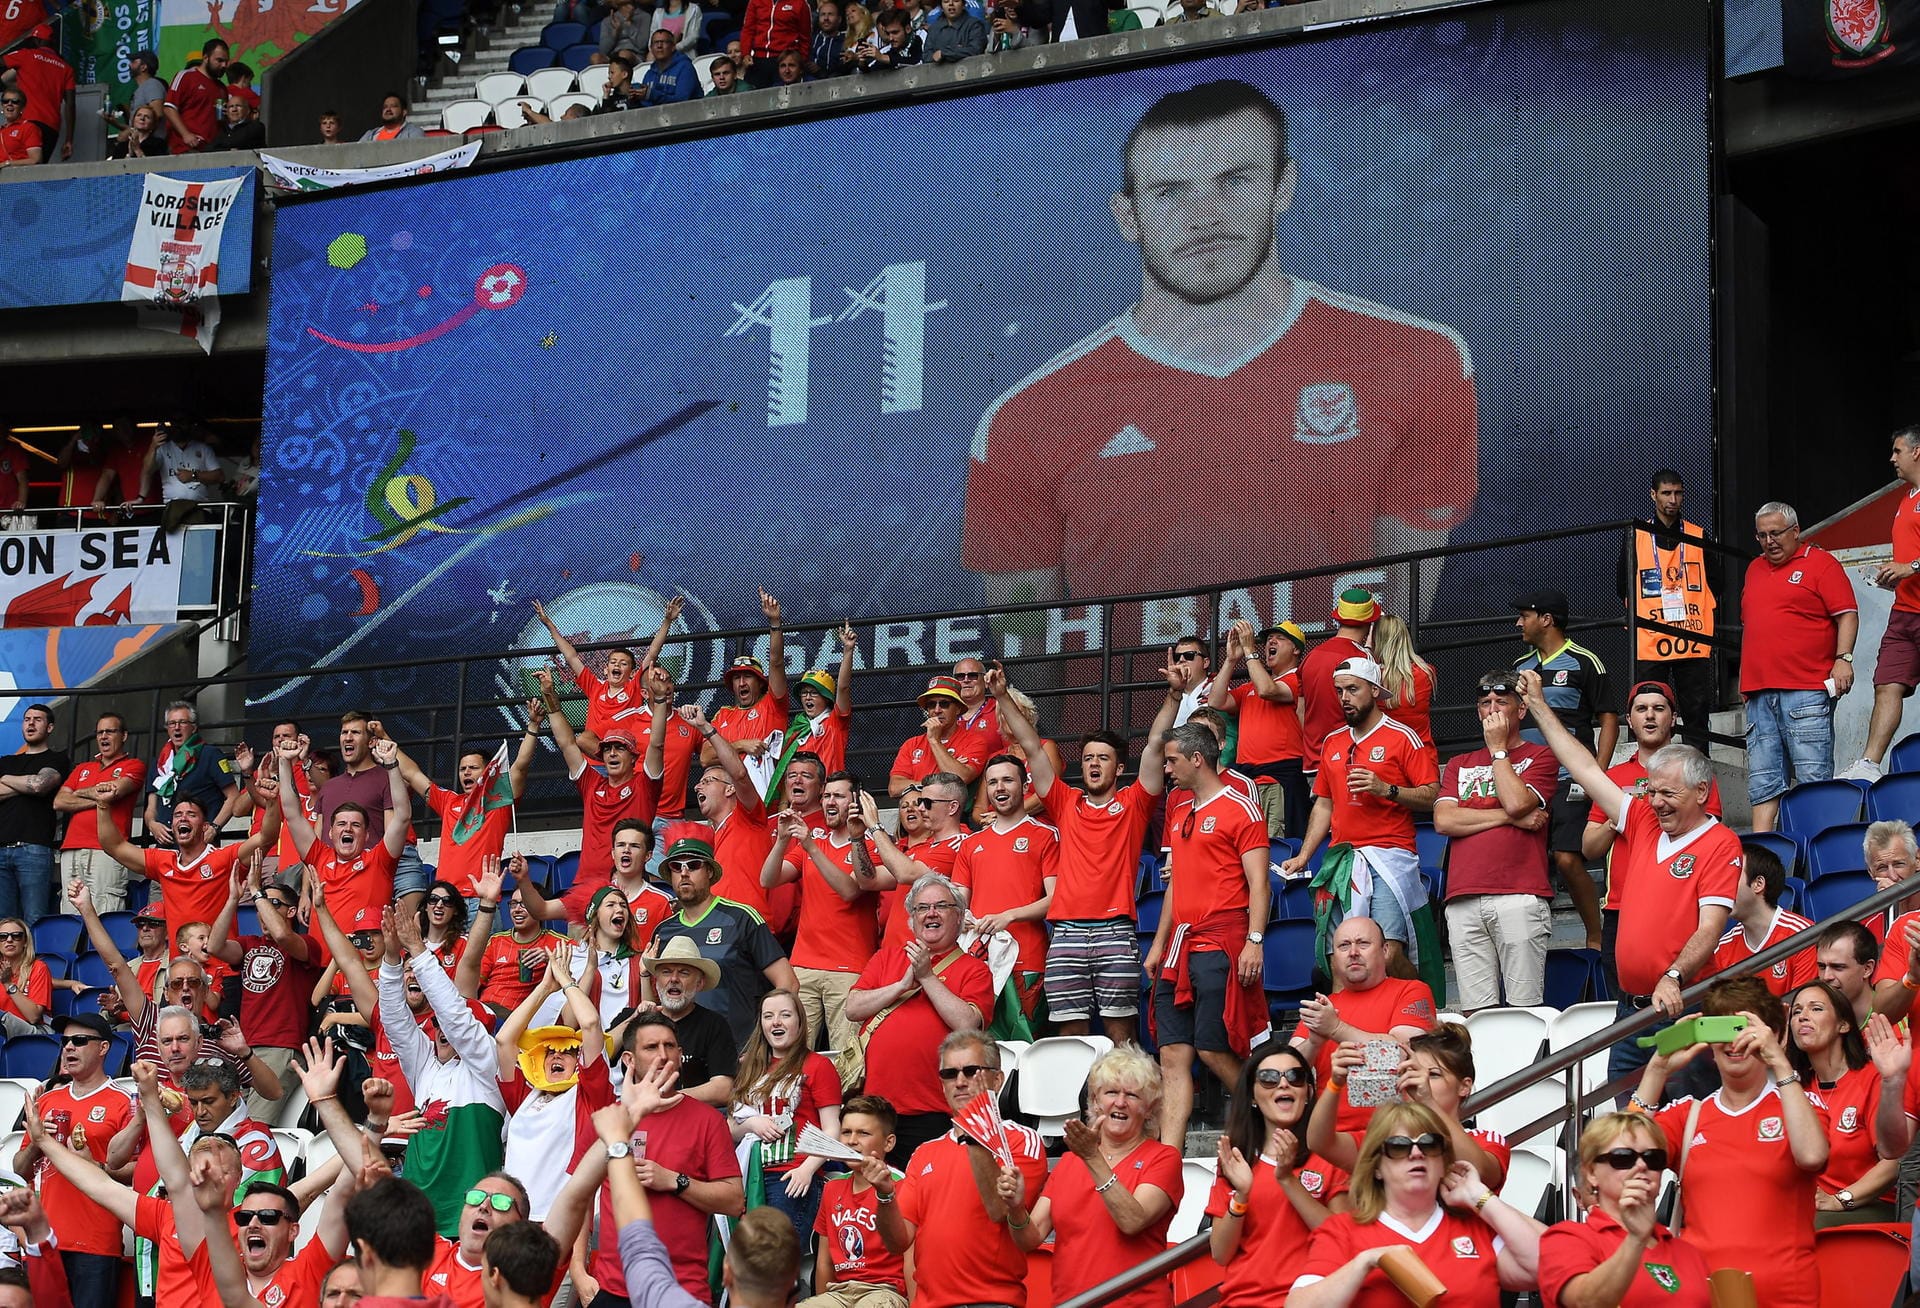 Und dann geht es auch schon weiter: Im zweiten EM-Achtelfinale kommt es zum "Battle of Britain" - Wales trifft auf Nordirland! Klar, dass die walisischen Fans ihrem Superstar Gareth Bale huldigen...